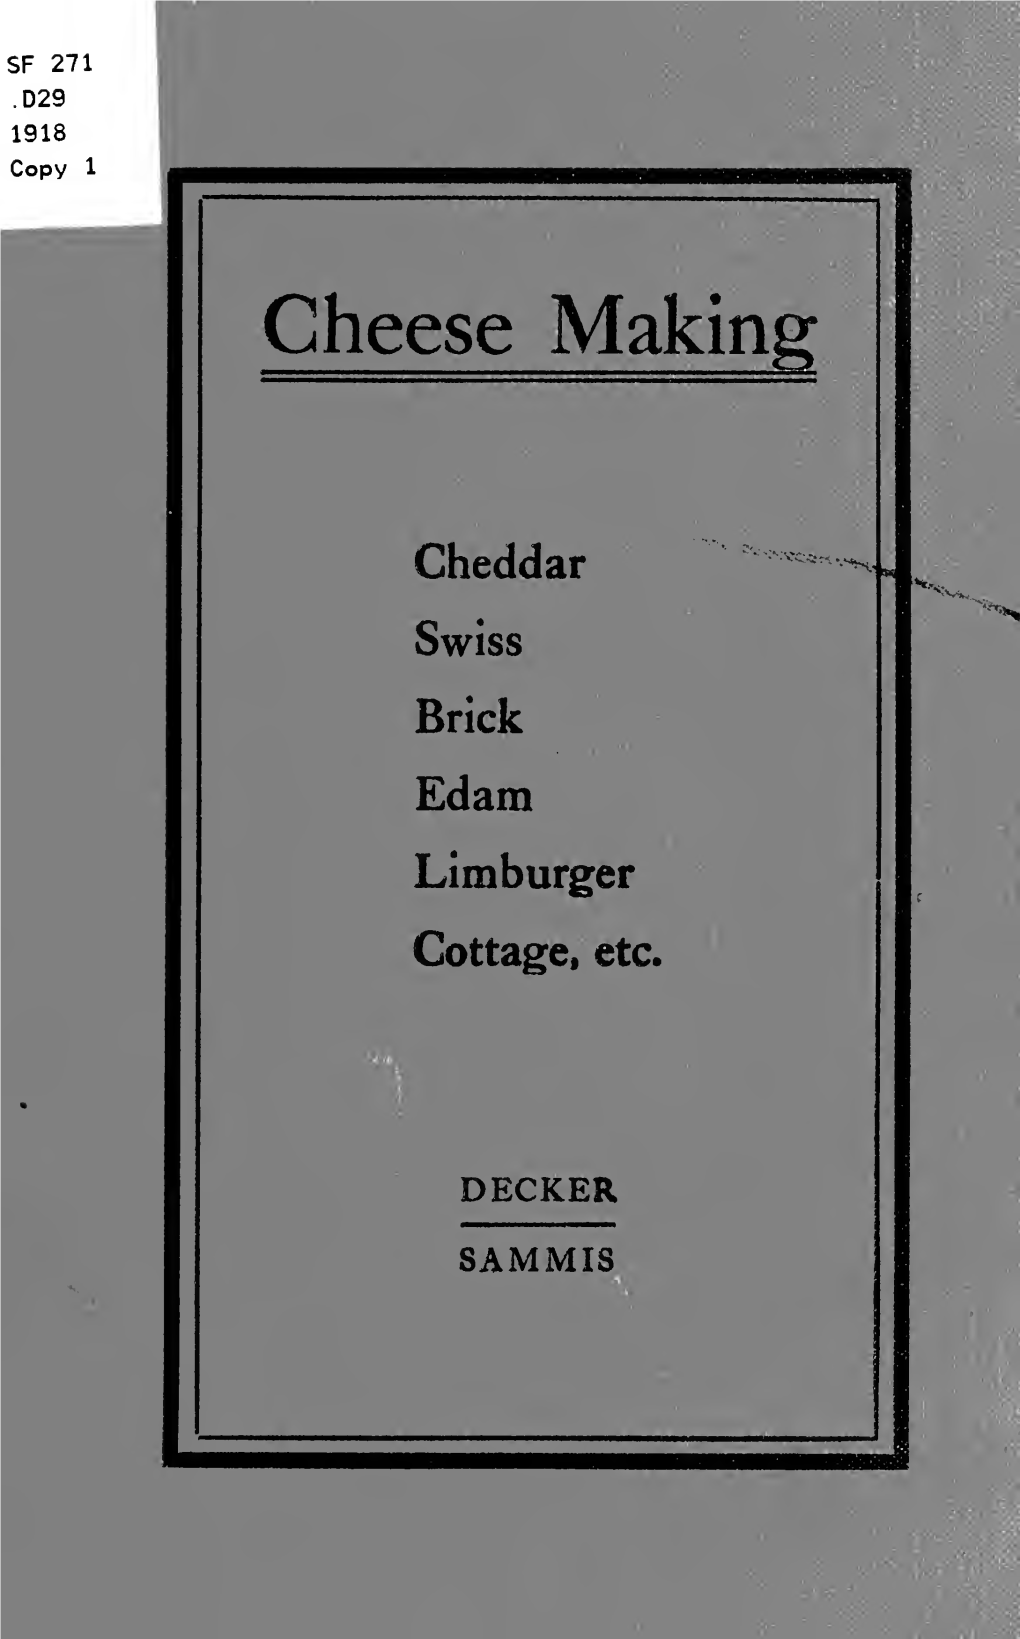 Cheese Making